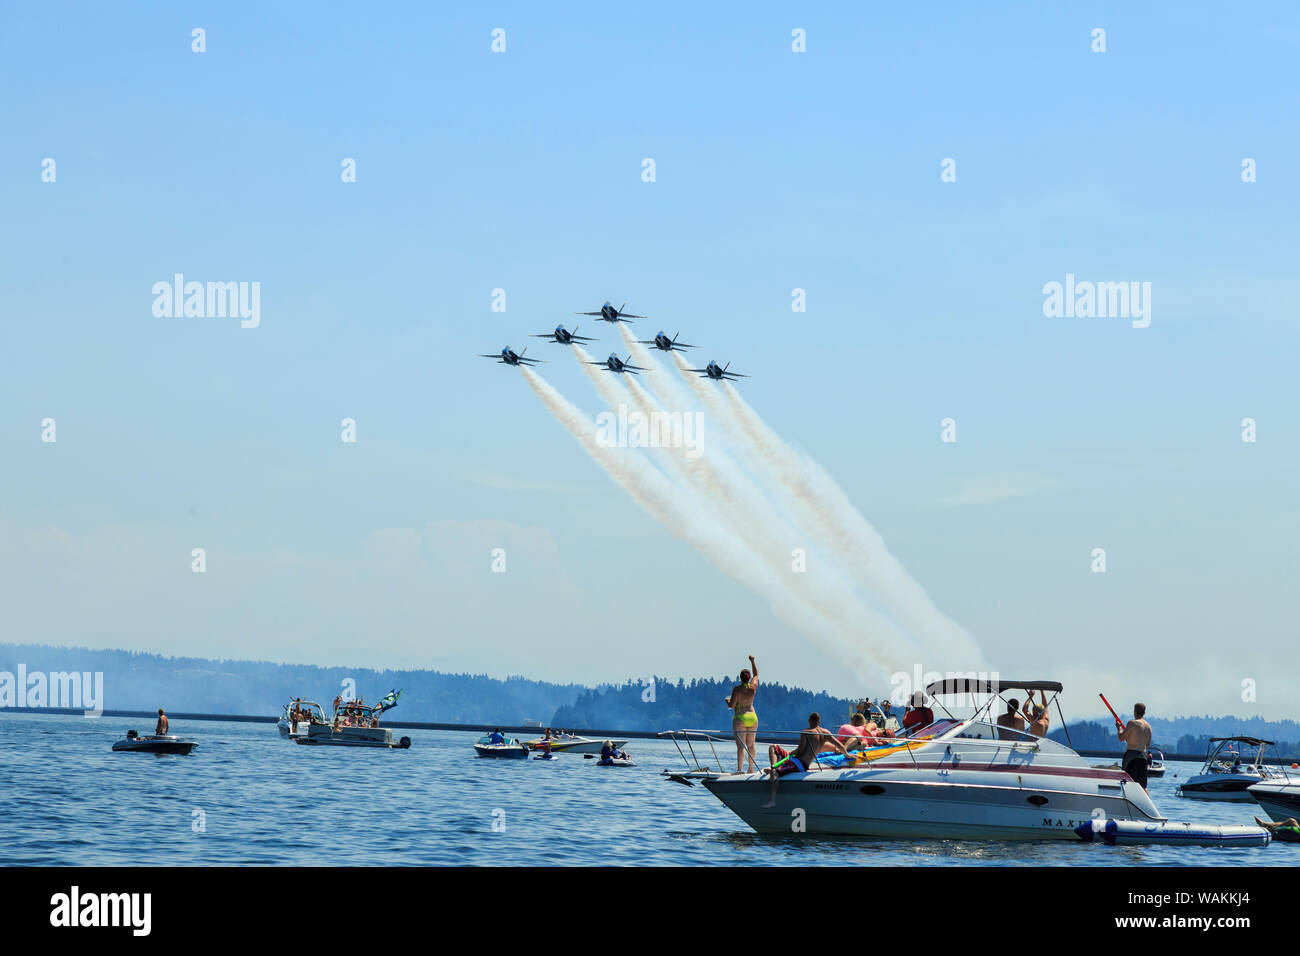 Airshow - Blue Angels Seafair célébration, le lac Washington, Seattle, Washington State, USA (usage éditorial uniquement) Banque D'Images